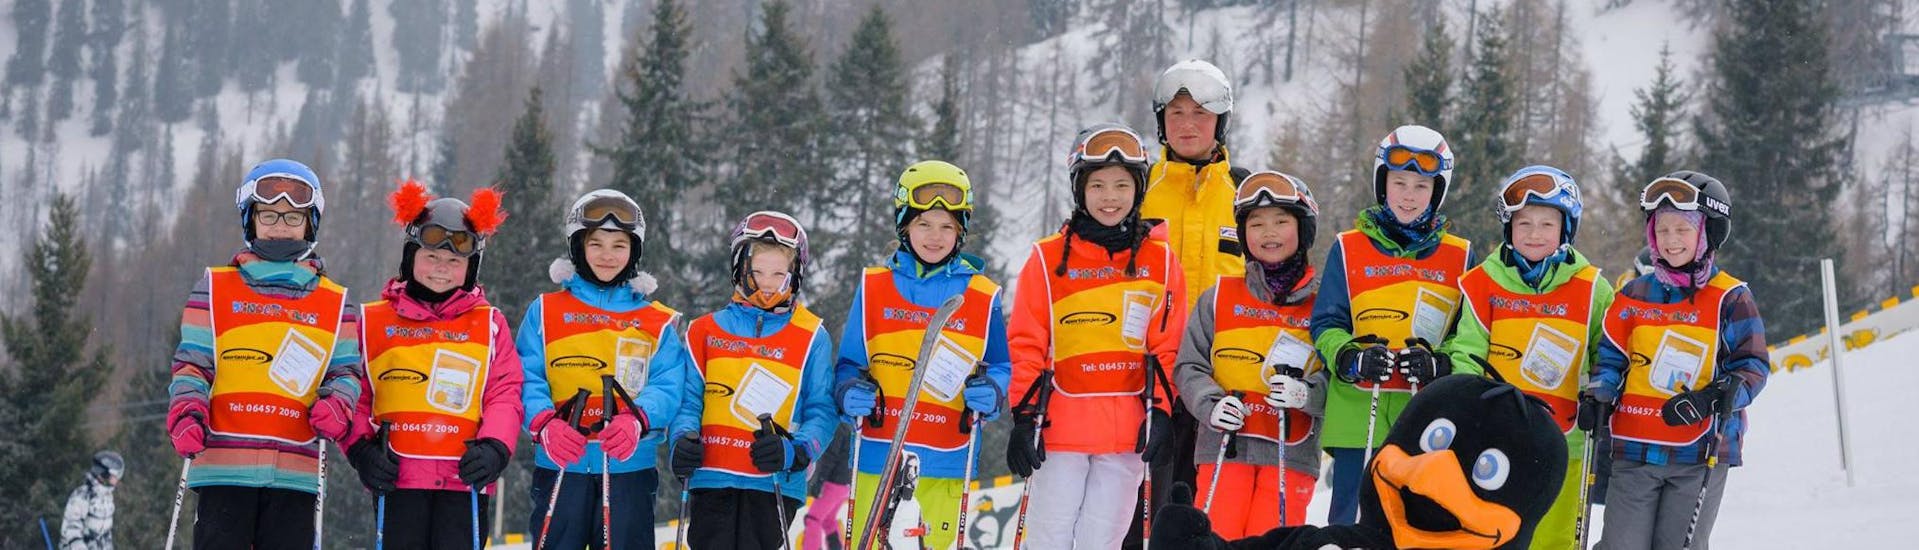 Skikurs für Kinder & Teens (6-14 Jahre) - Mit Erfahrung.